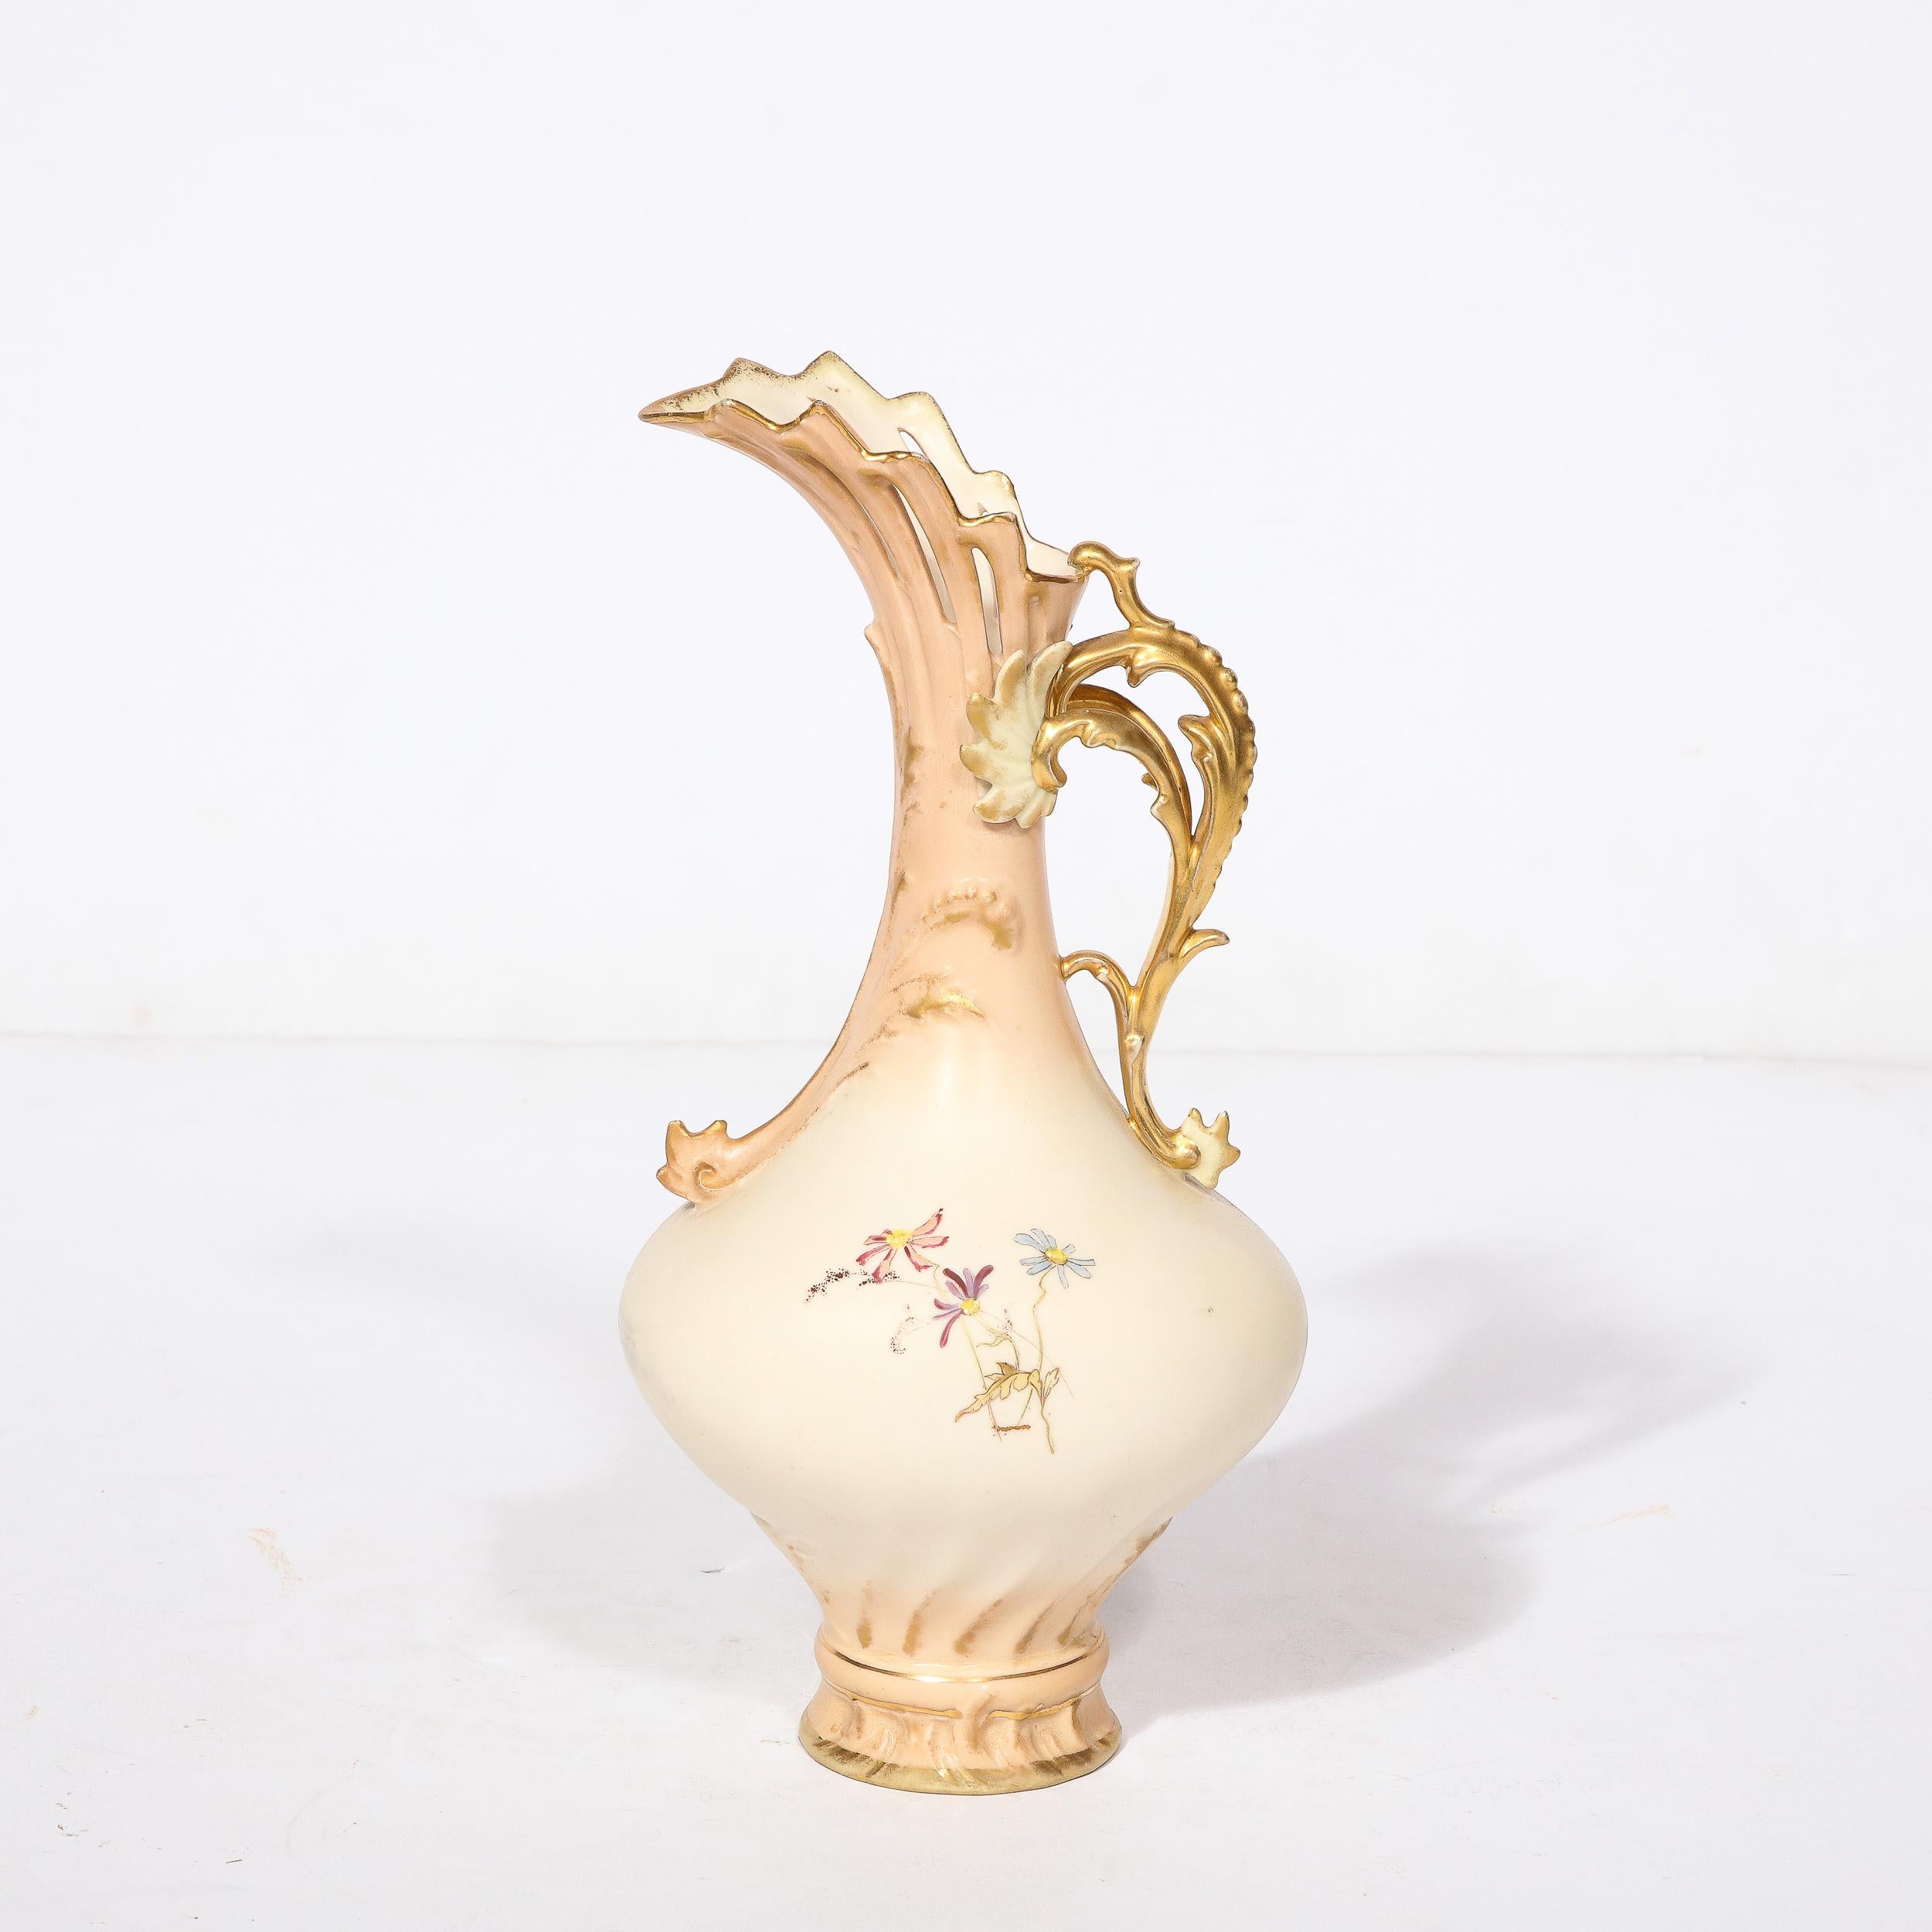 Diese elegante und gut verzierte Porzellanvase, signiert A. Stowell Boston, stammt aus Österreich, CIRCA 1880. Der runde Korpus mit dem schönen vergoldeten, stilisierten Griff in Form einer Schnecke und der kannelierten Mündung ist gleichzeitig kühn